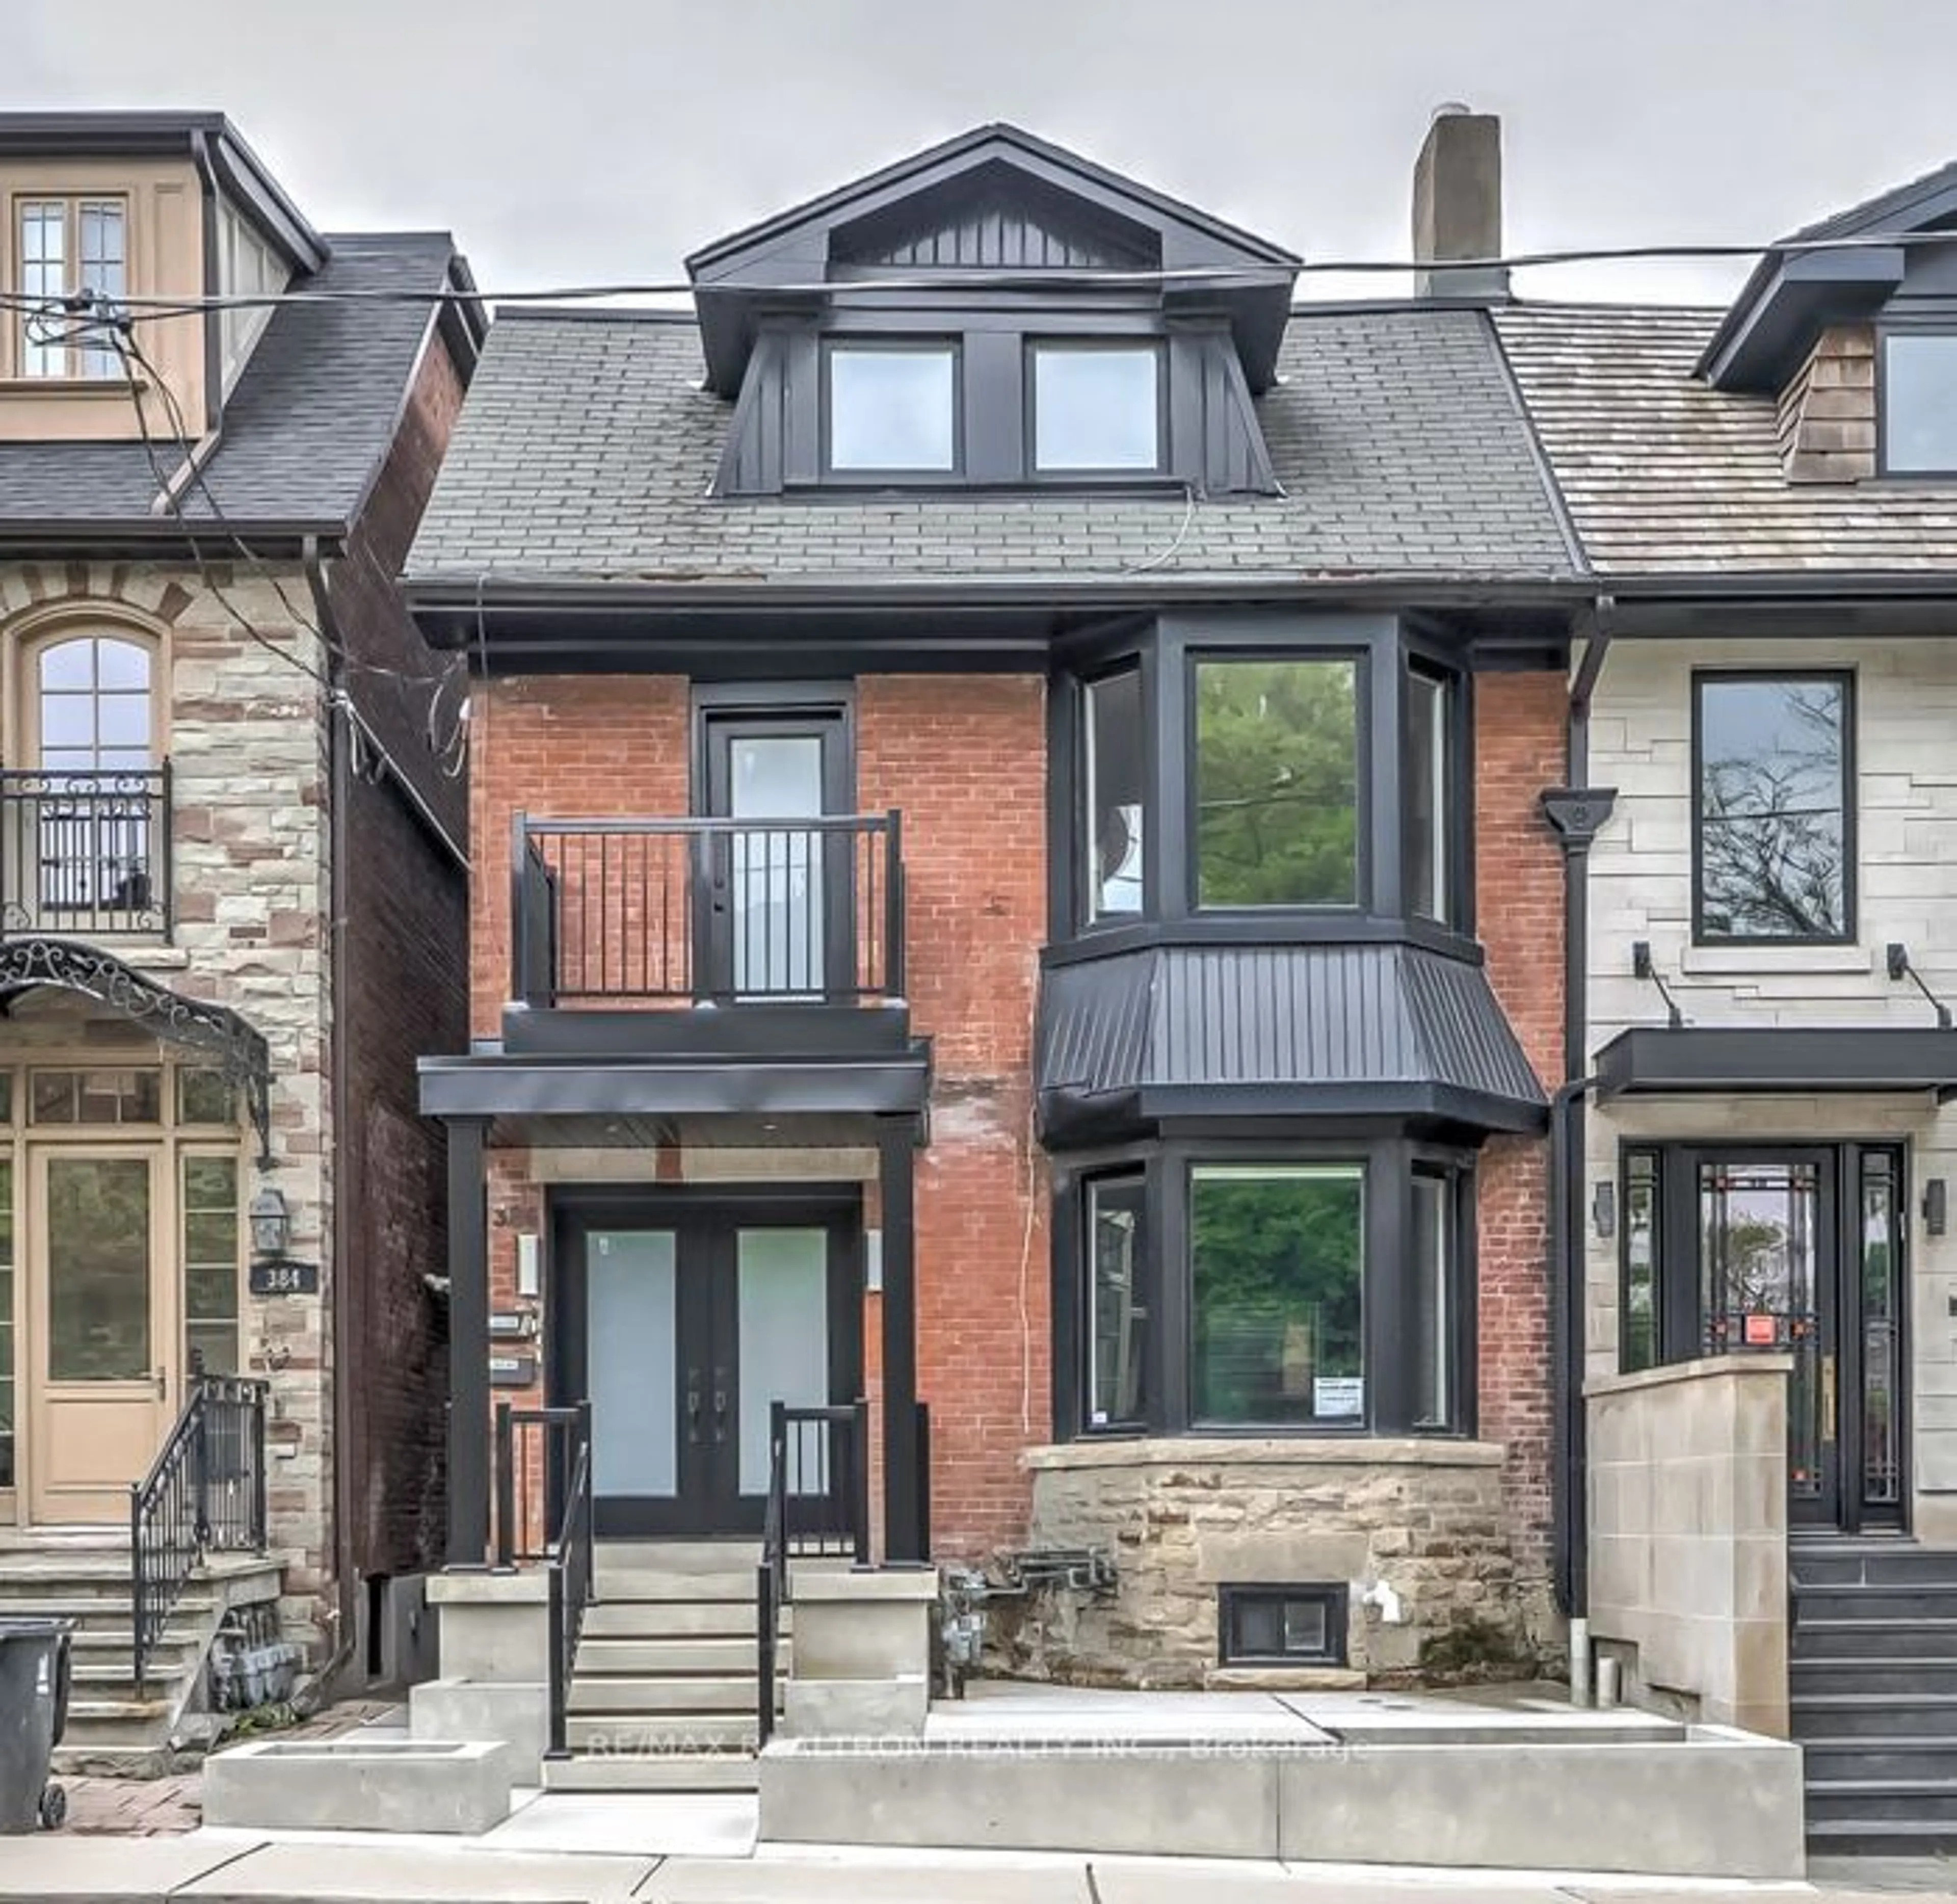 Home with brick exterior material for 386 Spadina Rd, Toronto Ontario M5P 2V9